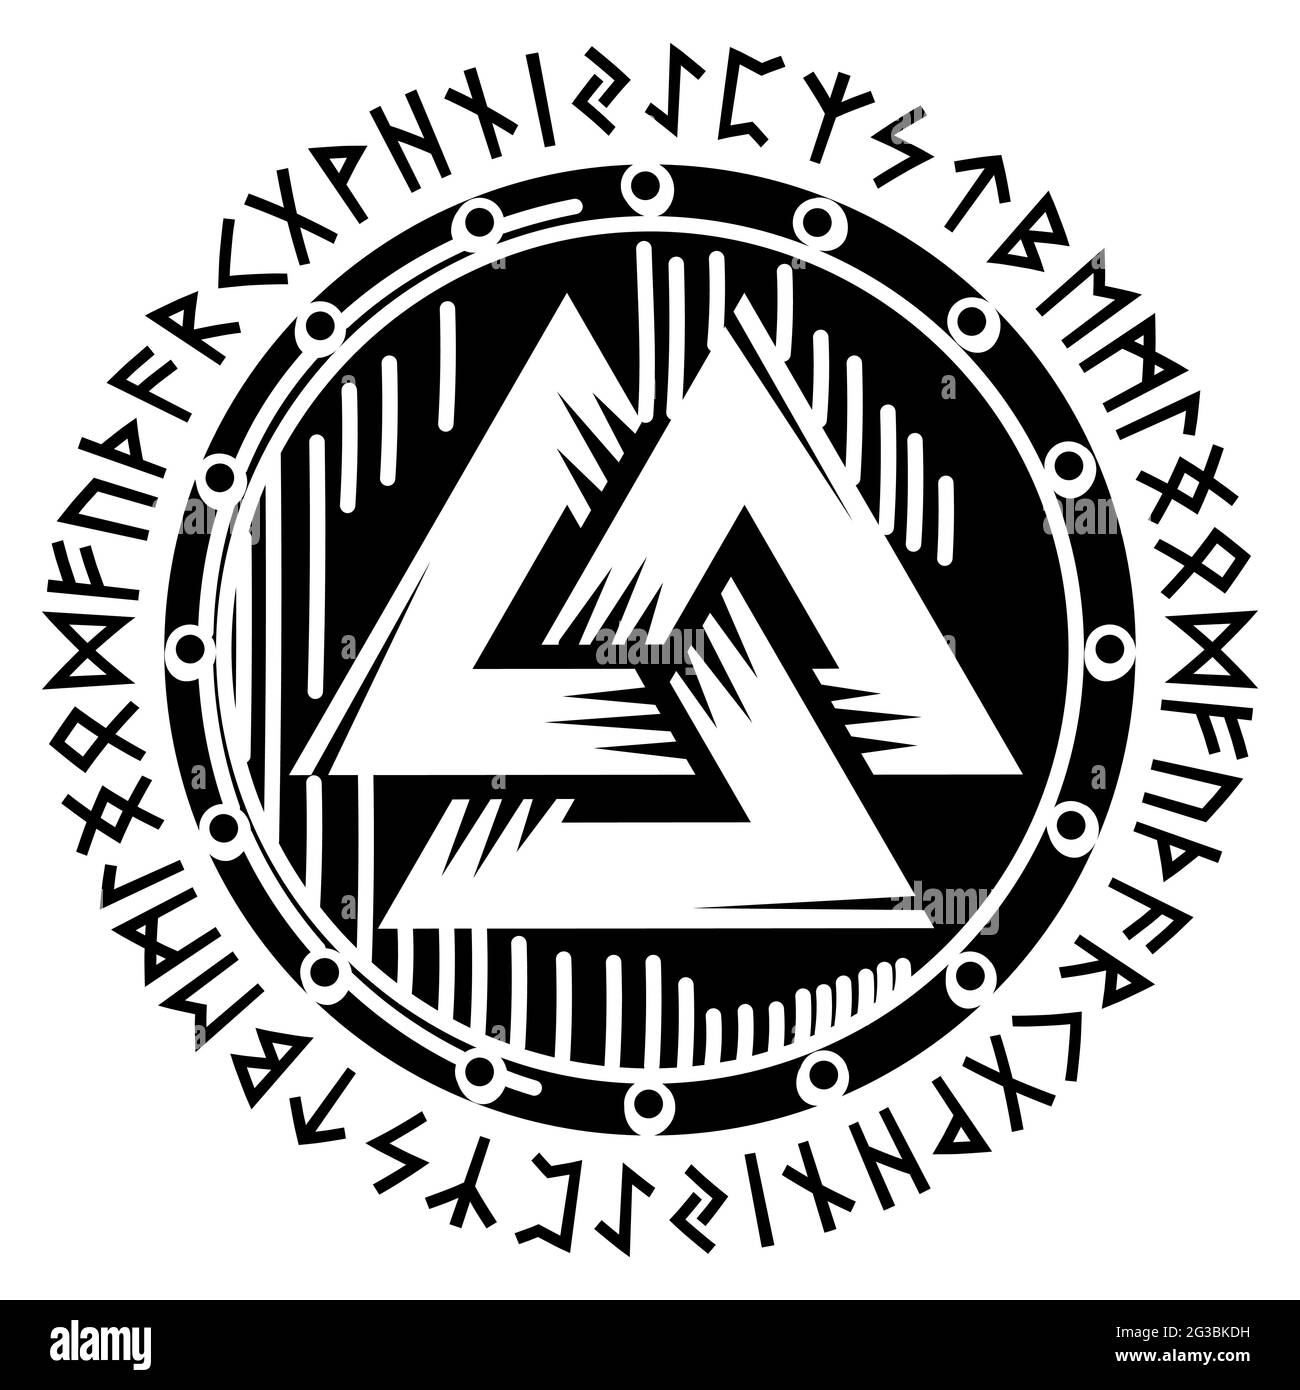 Design vichingo scandinavo. Scudo vichingo con rune settentrionali - antico alfabeto norreno, illustrazione vettoriale Illustrazione Vettoriale